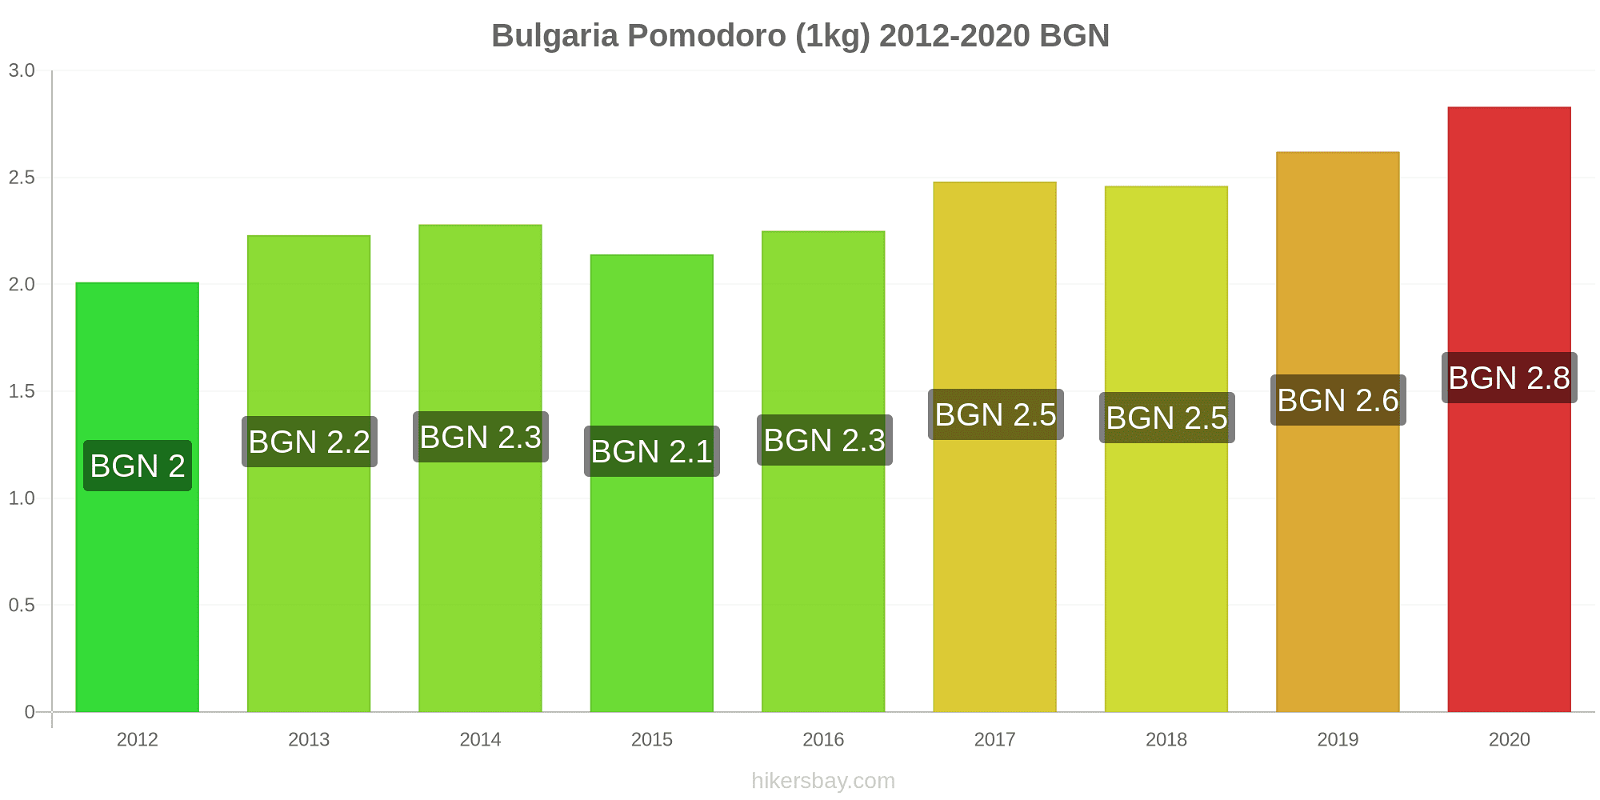 Bulgaria variazioni di prezzo Pomodoro (1kg) hikersbay.com